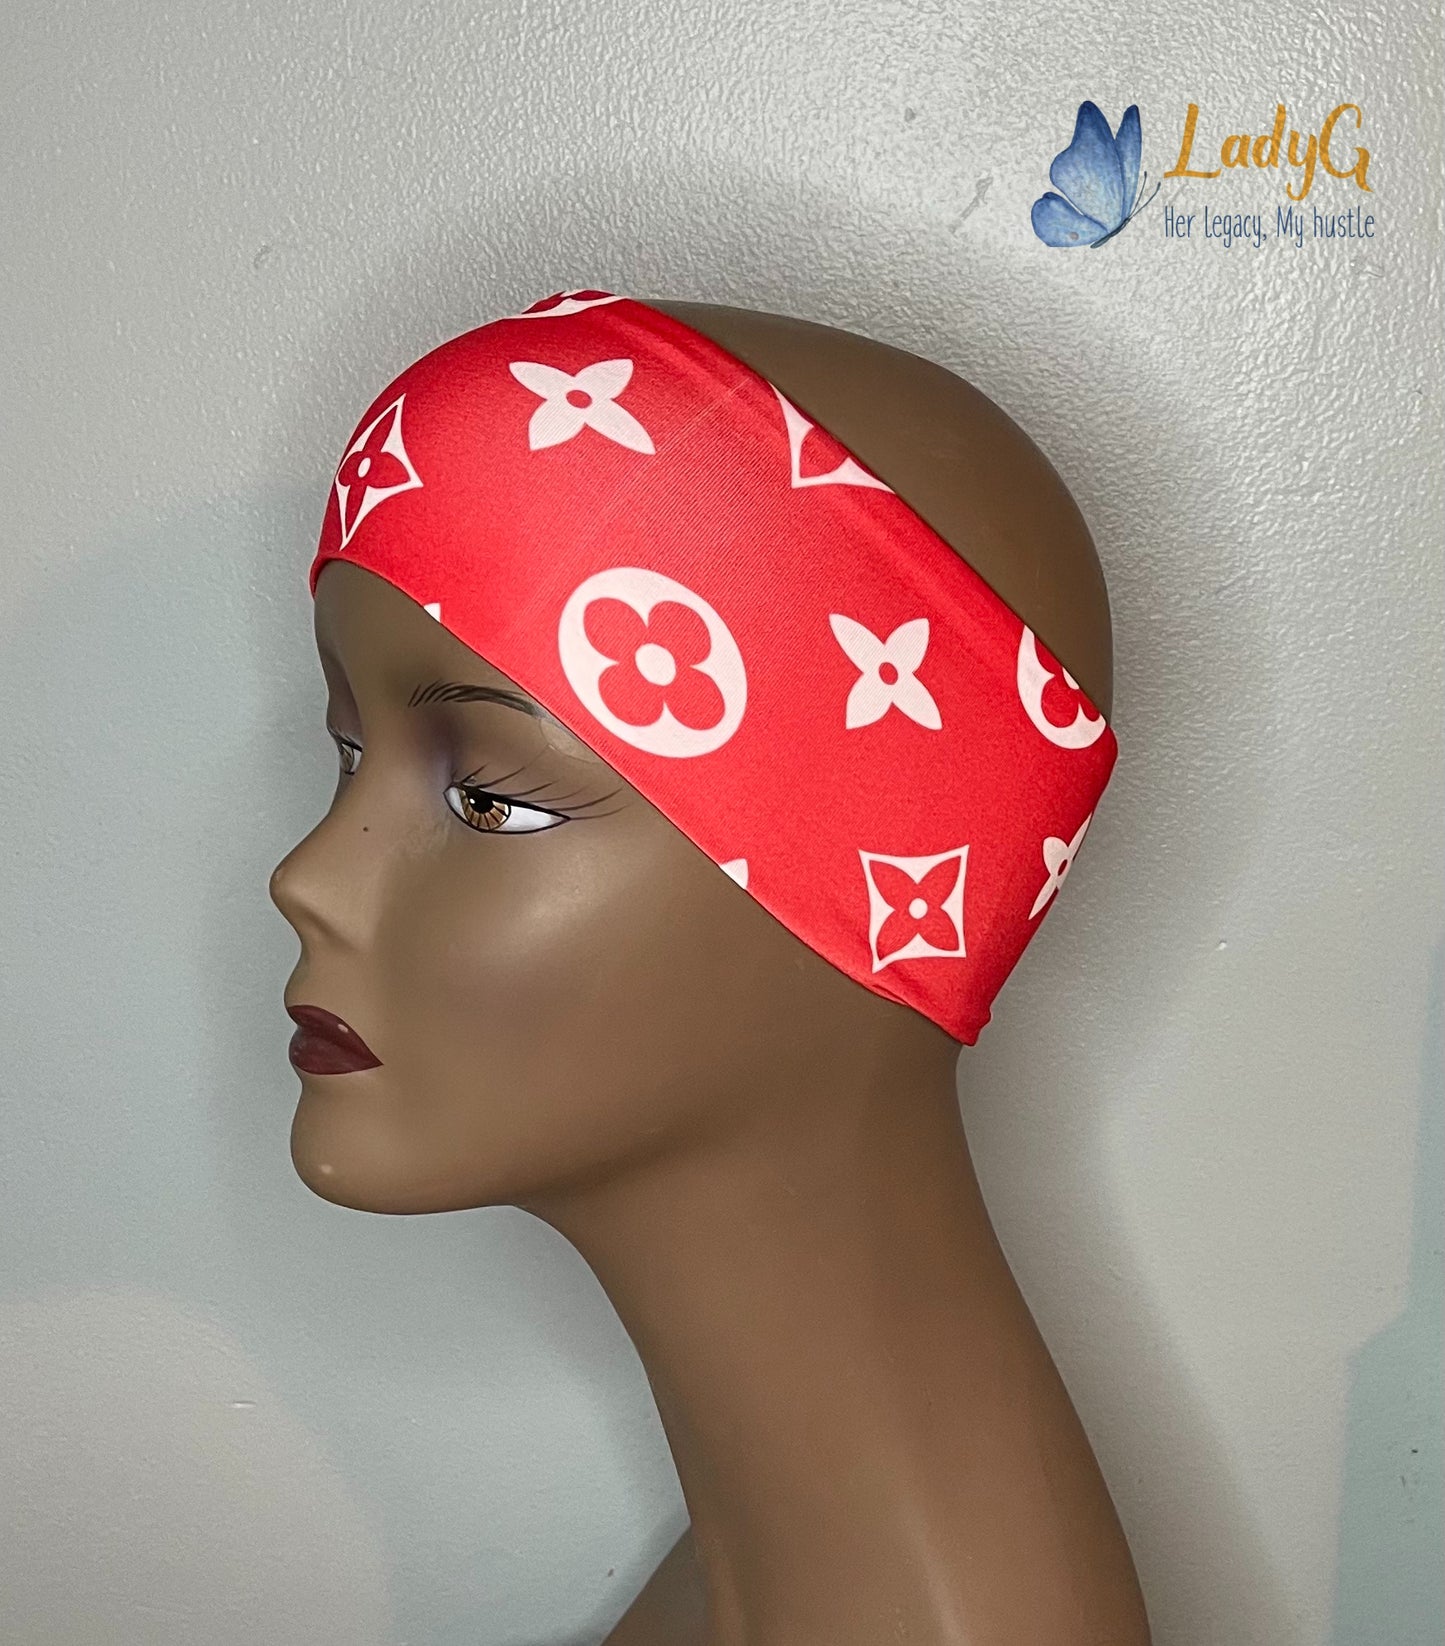 designer headbands for women louis vuitton